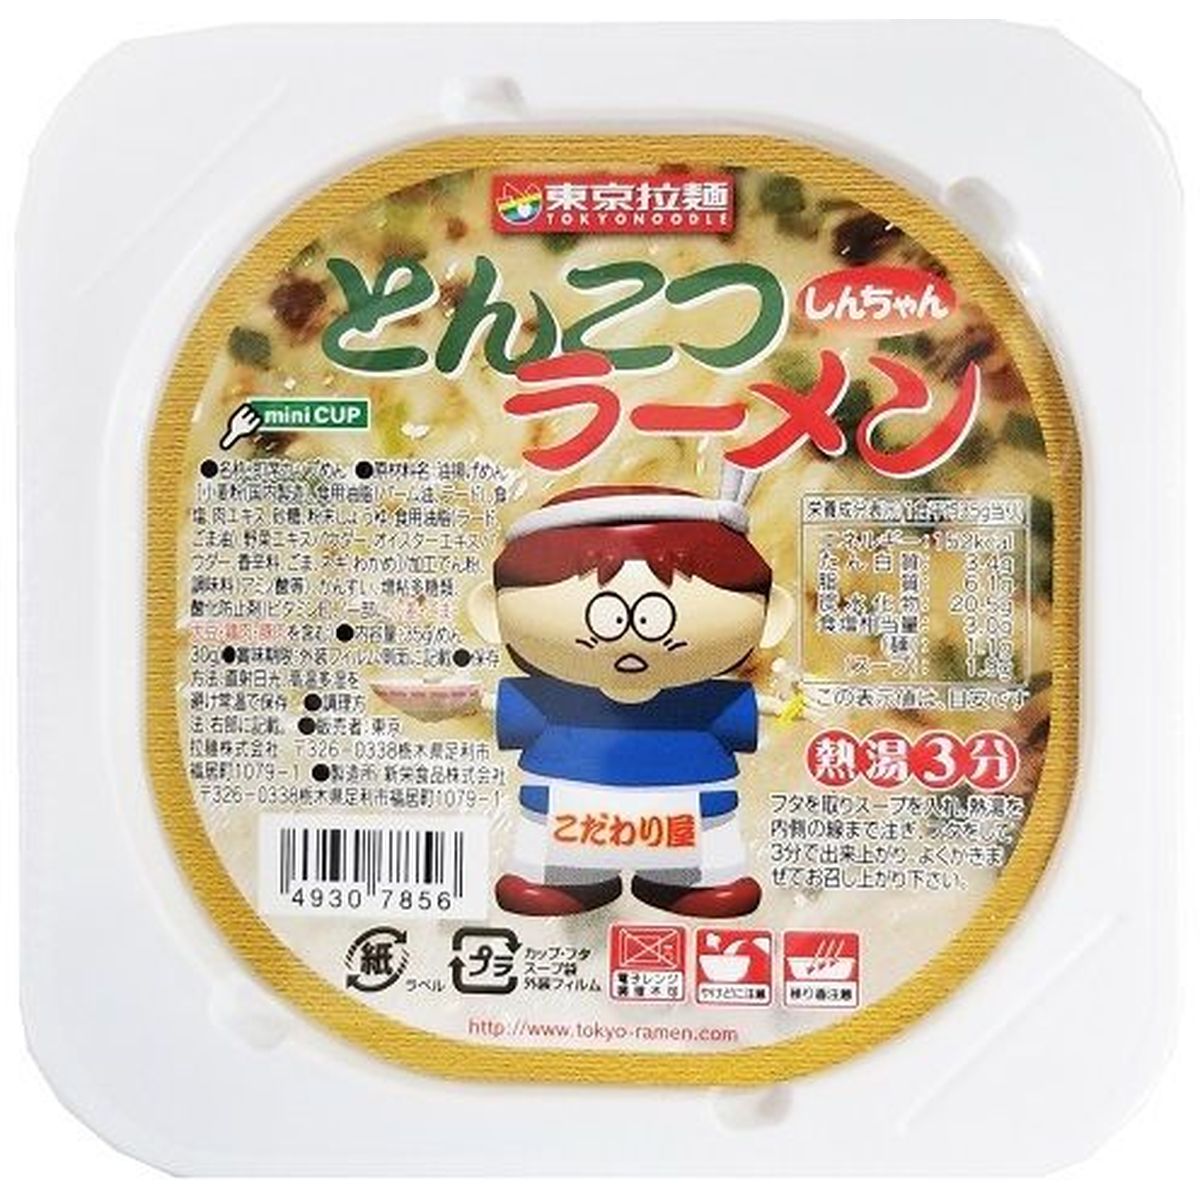 【30個入リ】東京拉麺 シンチャントンコツラーメン 35g